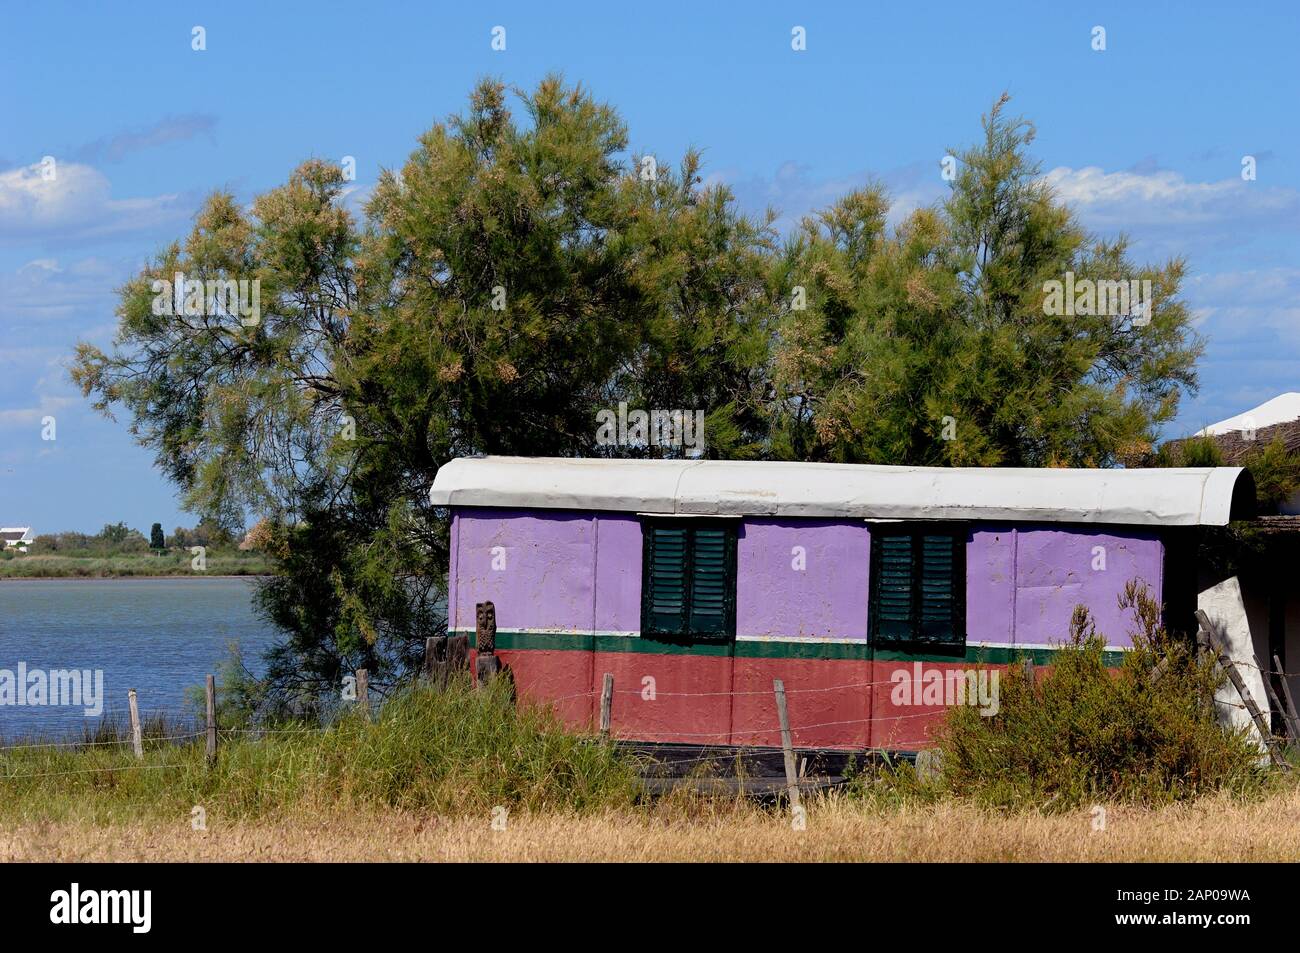 Ancien, Vintage ou rétro caravane sur le bord du lac ou lac près de Saintes Maries-de-la-Mer Camargue Provence France Banque D'Images